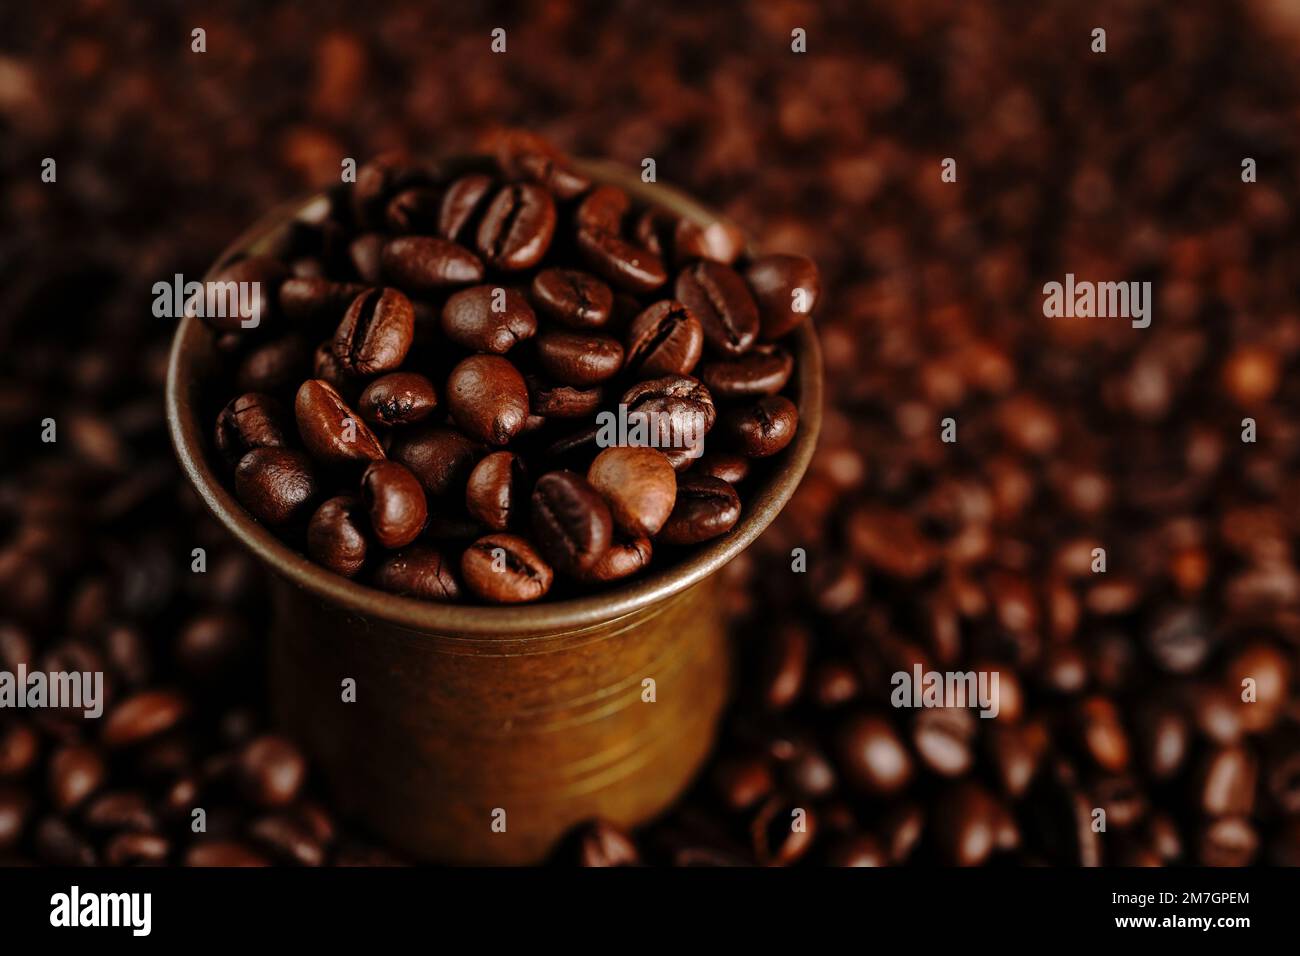 Fond de grains de café sur fond sombre, mise au point sélective Banque D'Images